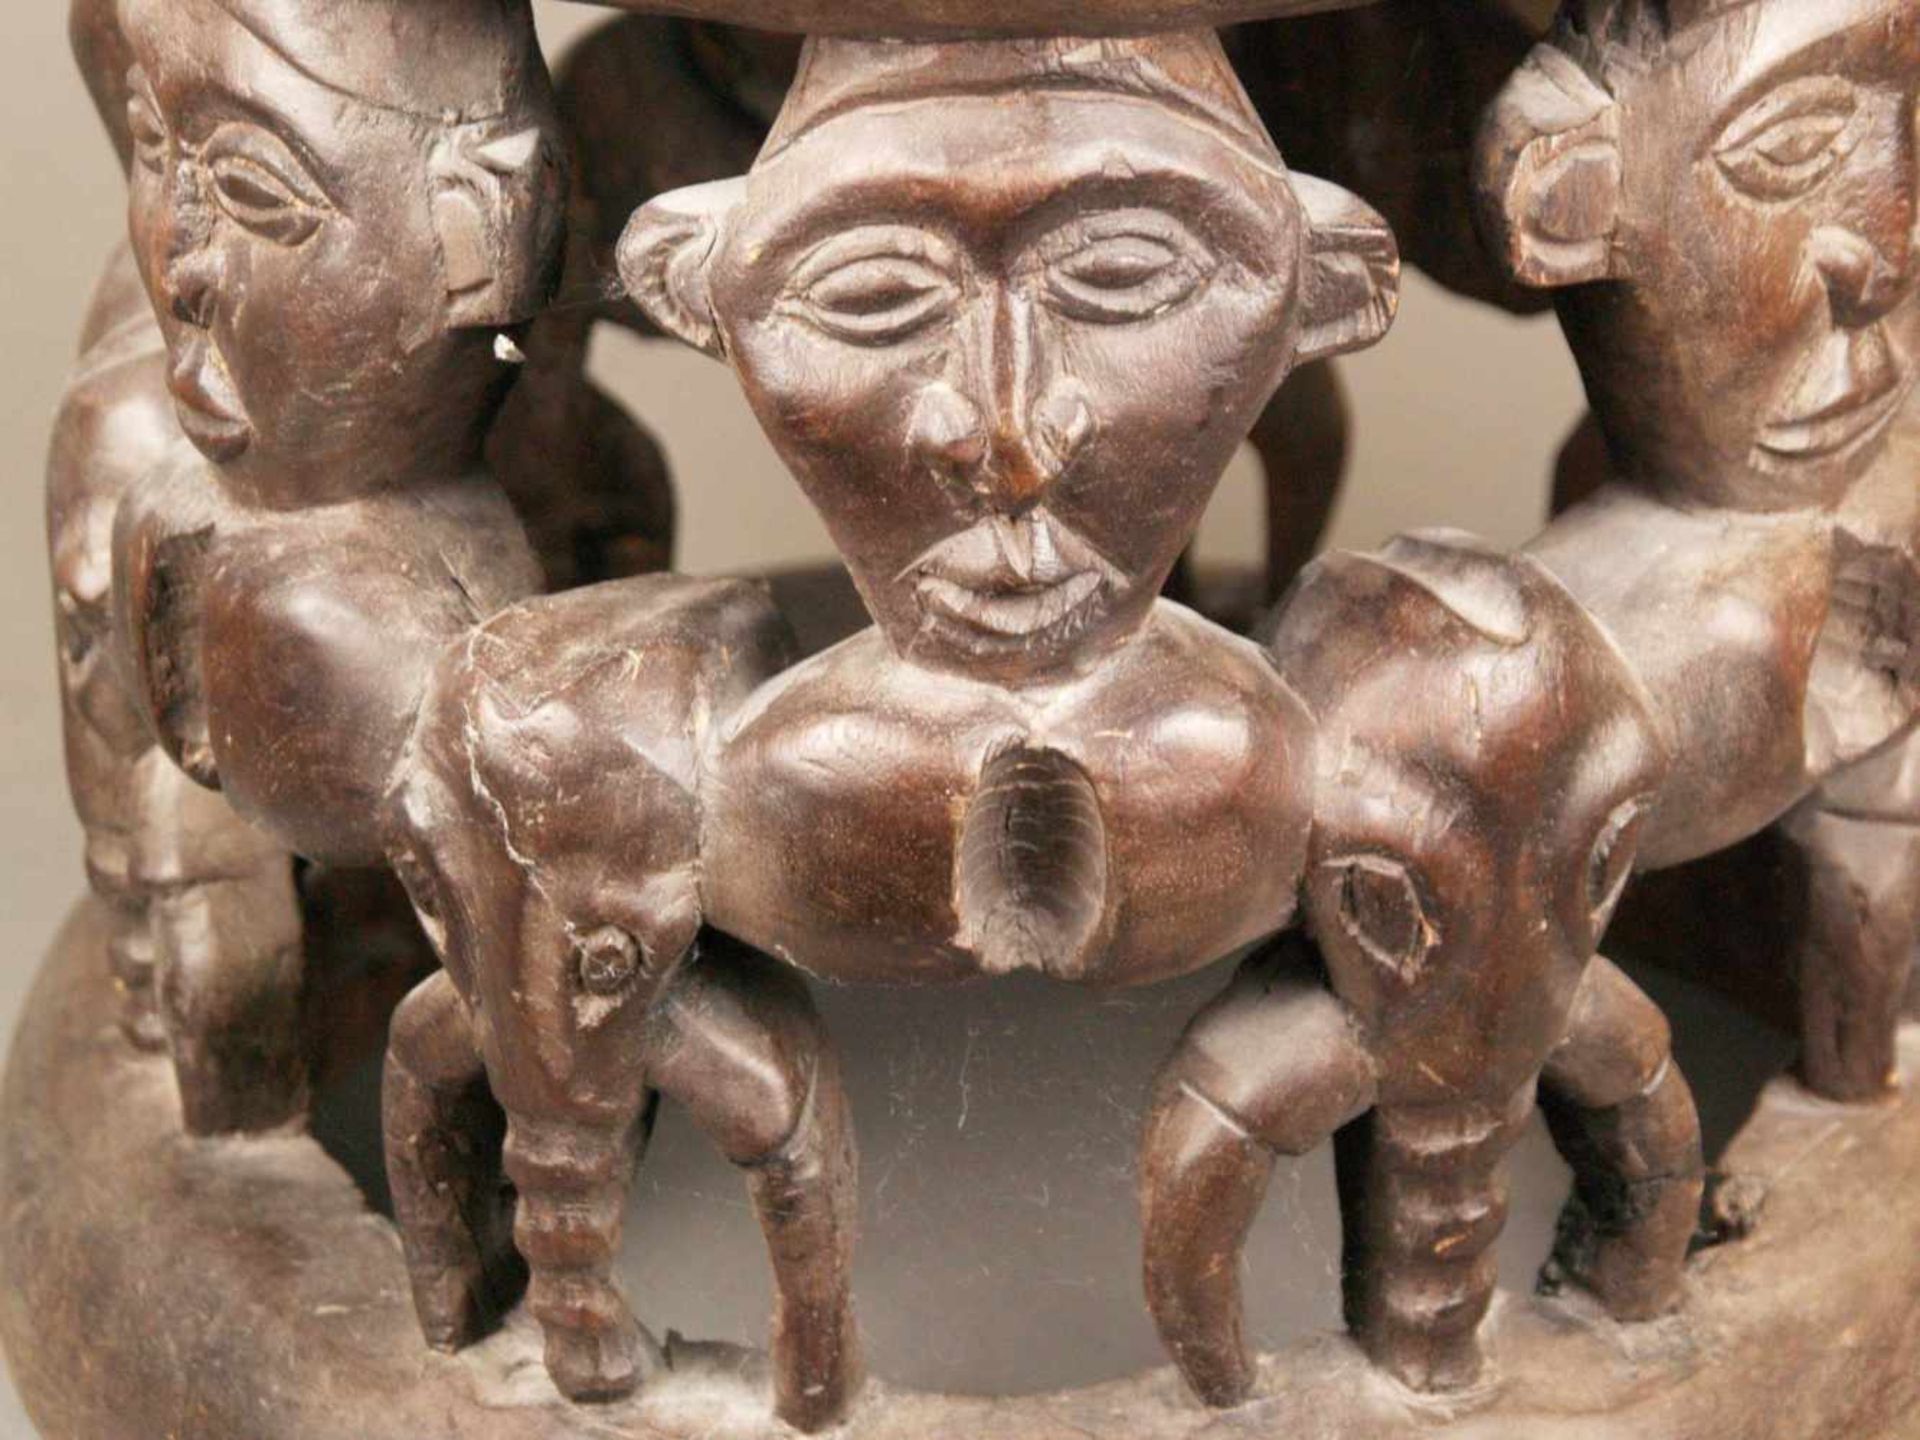 Hocker - Kamerun, braunes Holz, geschnitzt, runde Sitzfläche, seitlich 7 Elefantenköpfe - Bild 3 aus 7